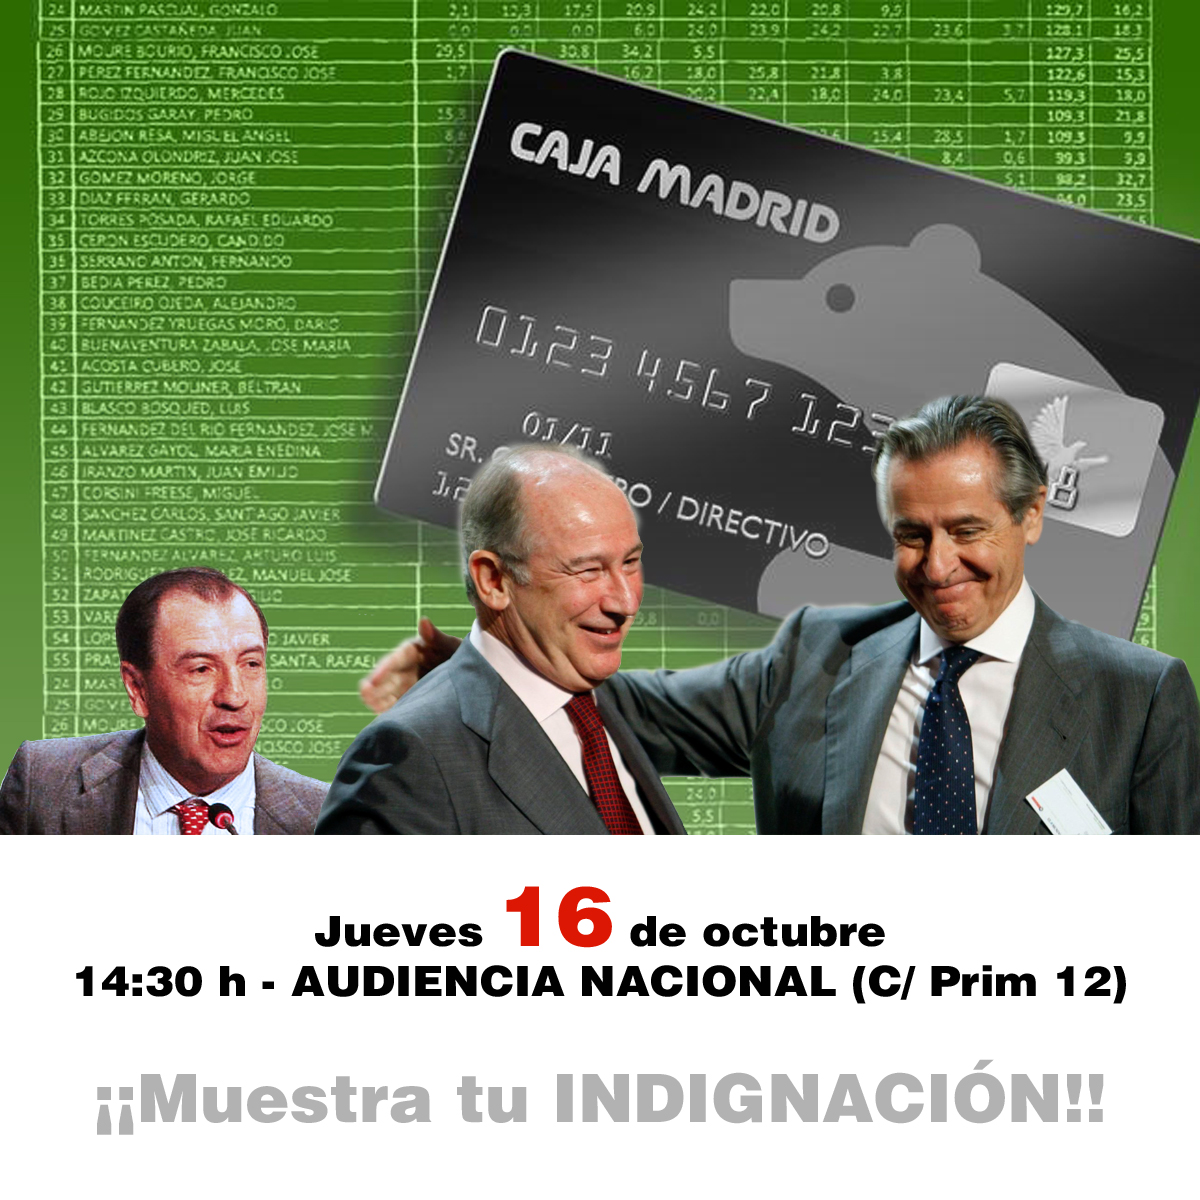 ADICAE anima a los afectados por Bankia a ‘recibir’ a Rato, Blesa y Sánchez Barcoj el 16 de octubre en la Audiencia Nacional